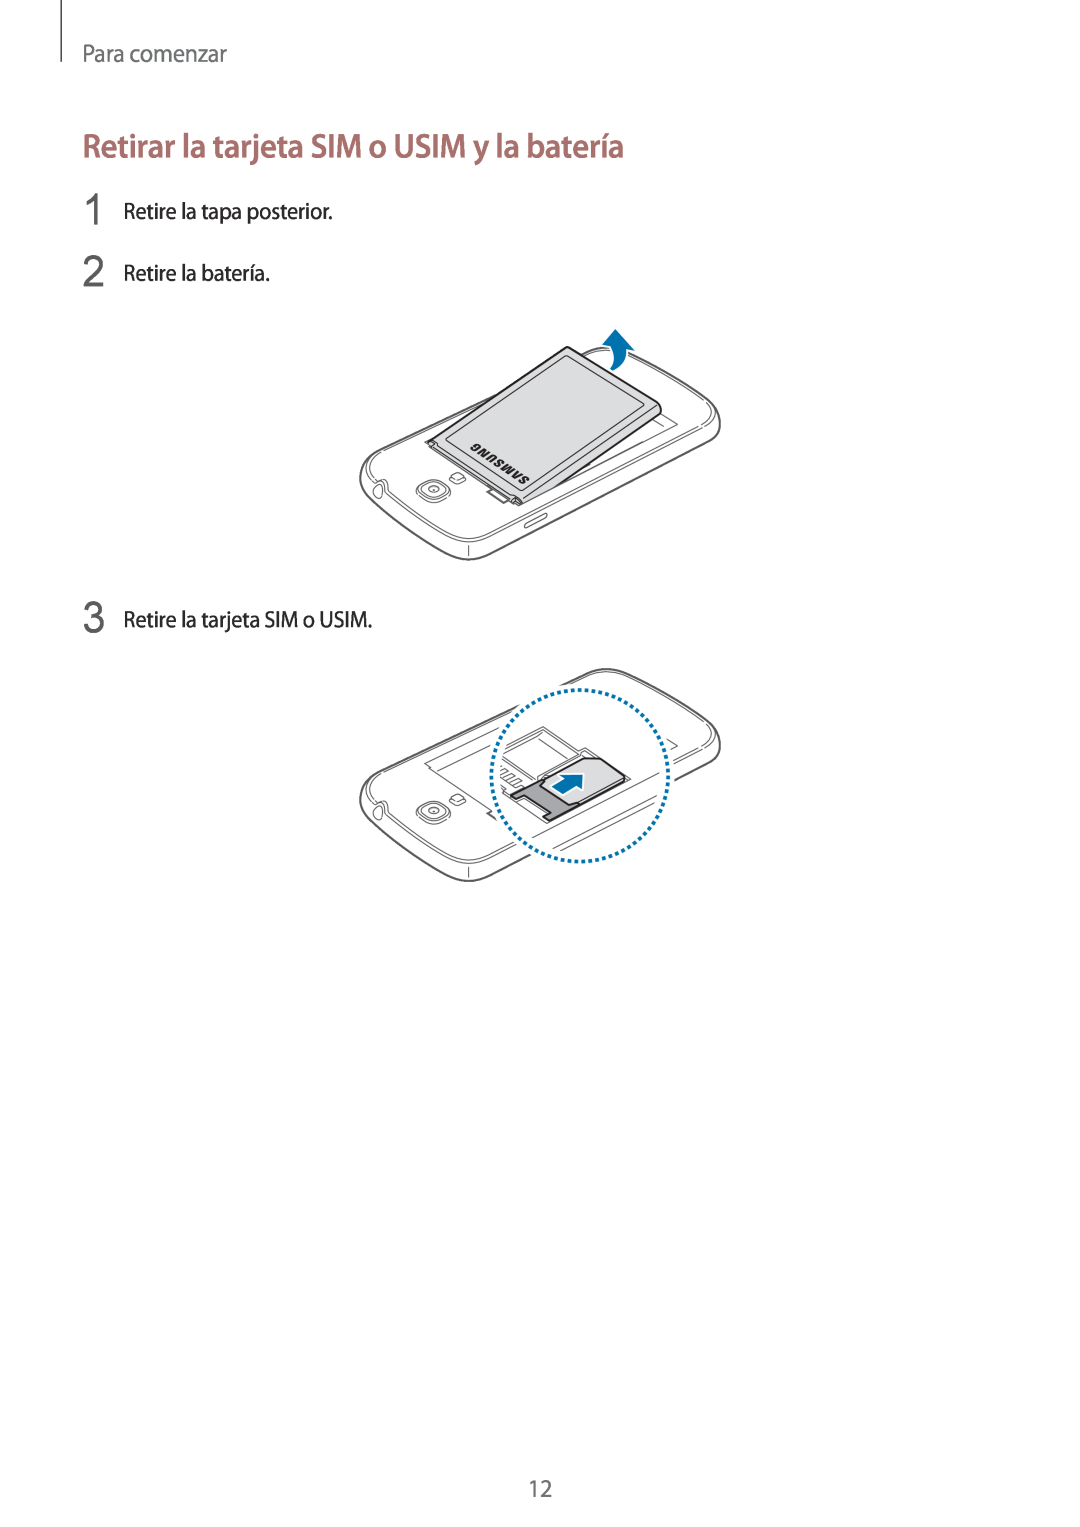 Samsung GT-I9195ZKAXEO manual Retirar la tarjeta SIM o USIM y la batería, Para comenzar, Retire la tarjeta SIM o USIM 